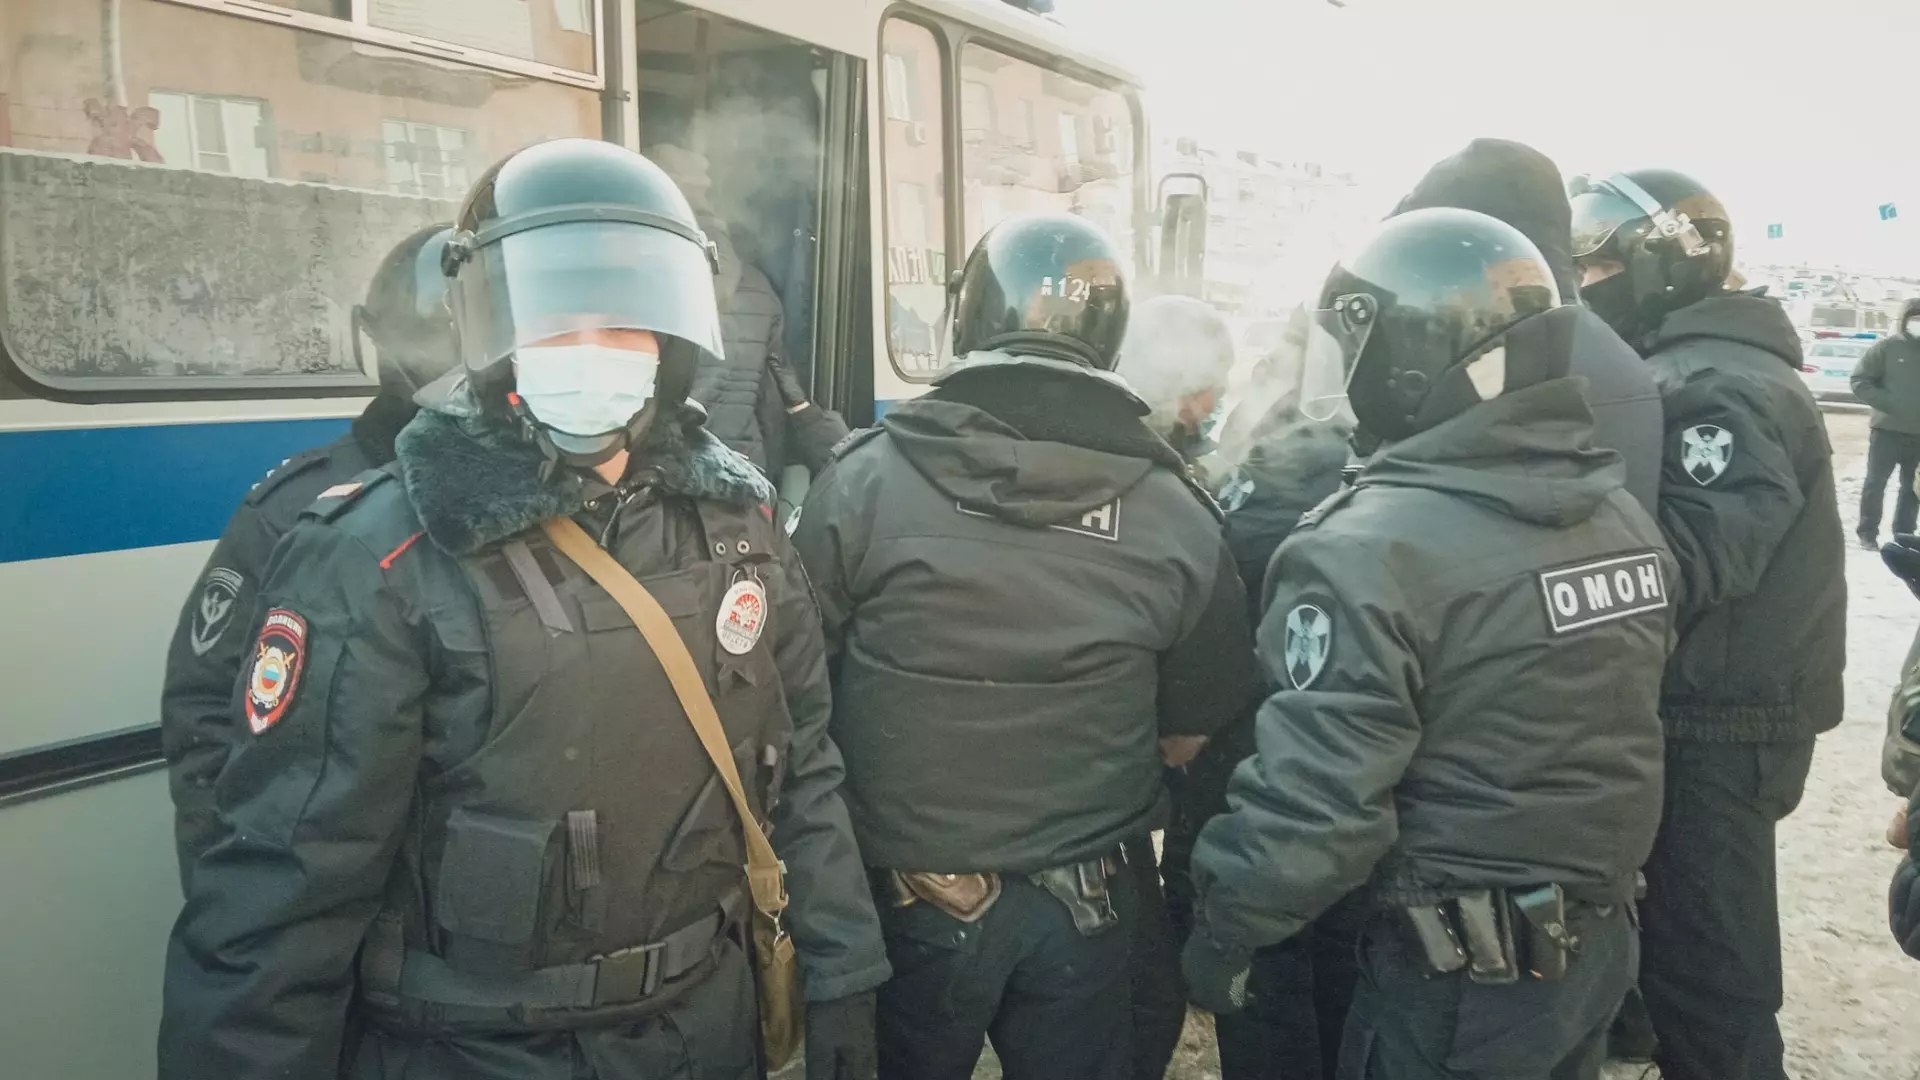 Необычайно большое количество полицейских заметили на улице в Ростове-на-Дону